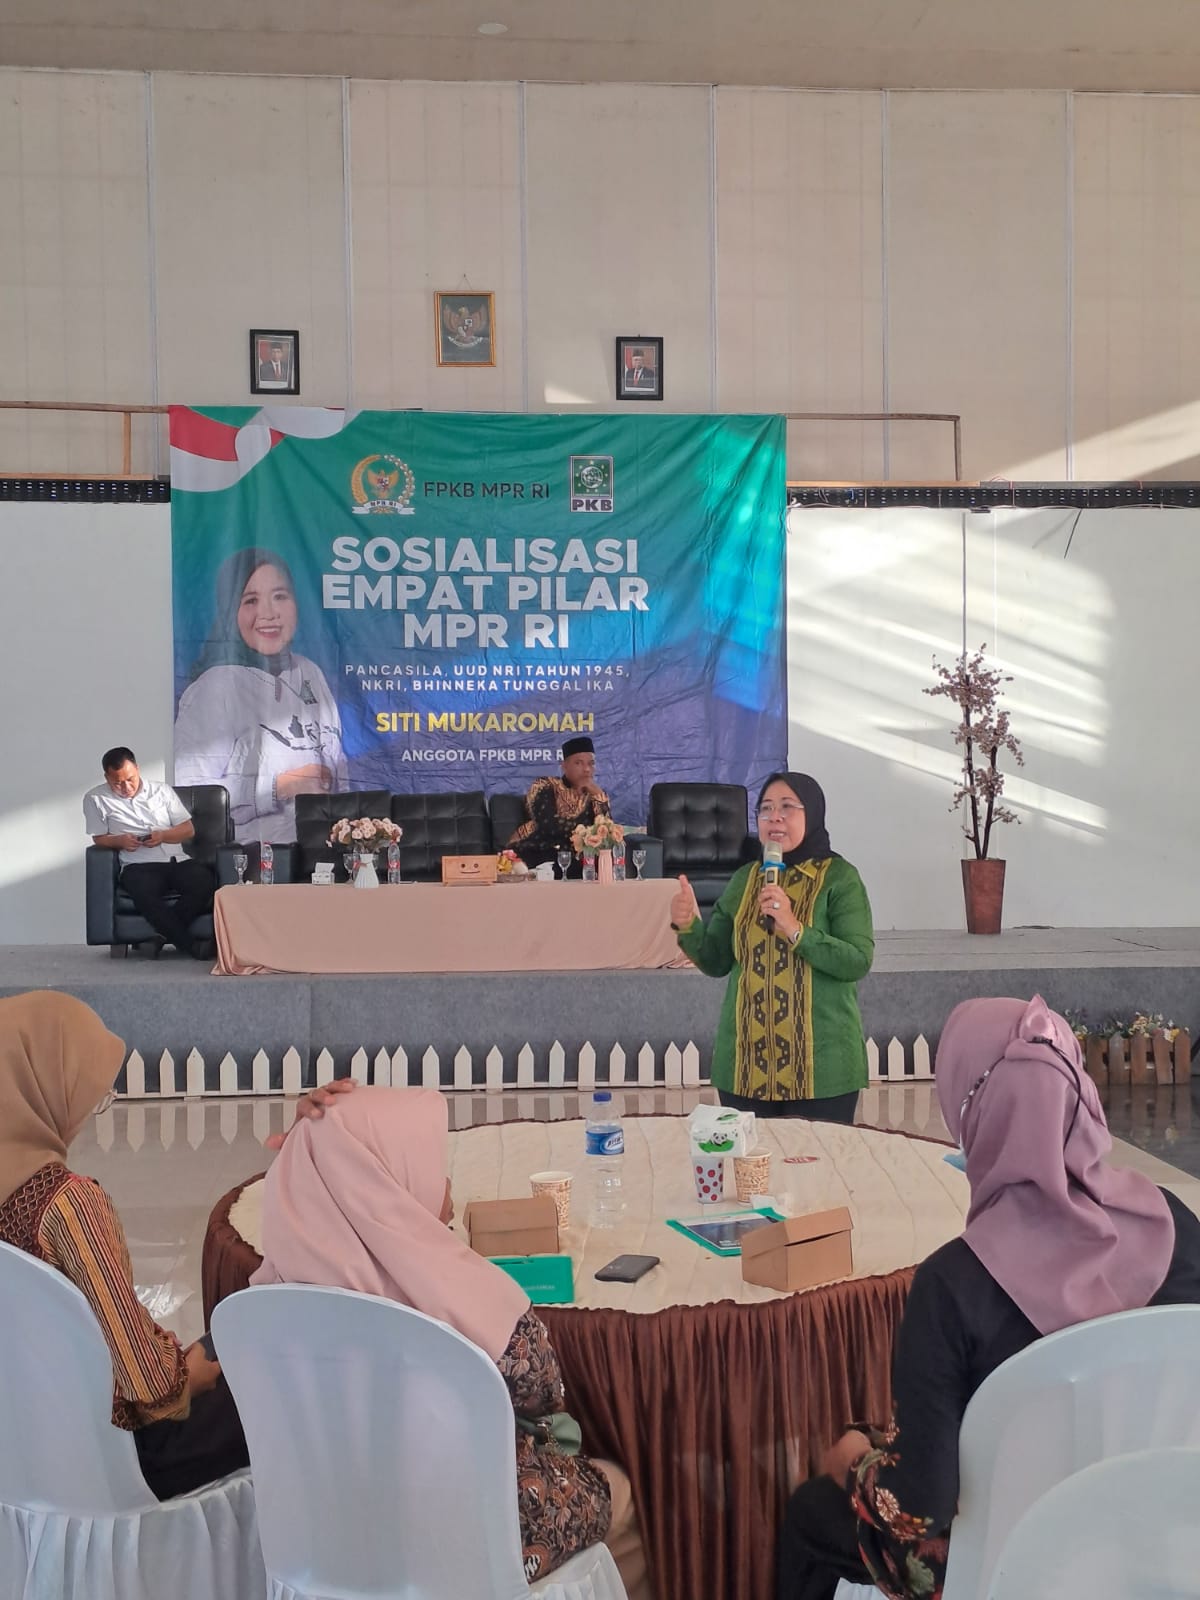 Anggota DPR RI, Siti Mukaromah memberikan paparan dalam sosialisasi 4 Pilar di Hall Sena, Kroya, Cilacap.